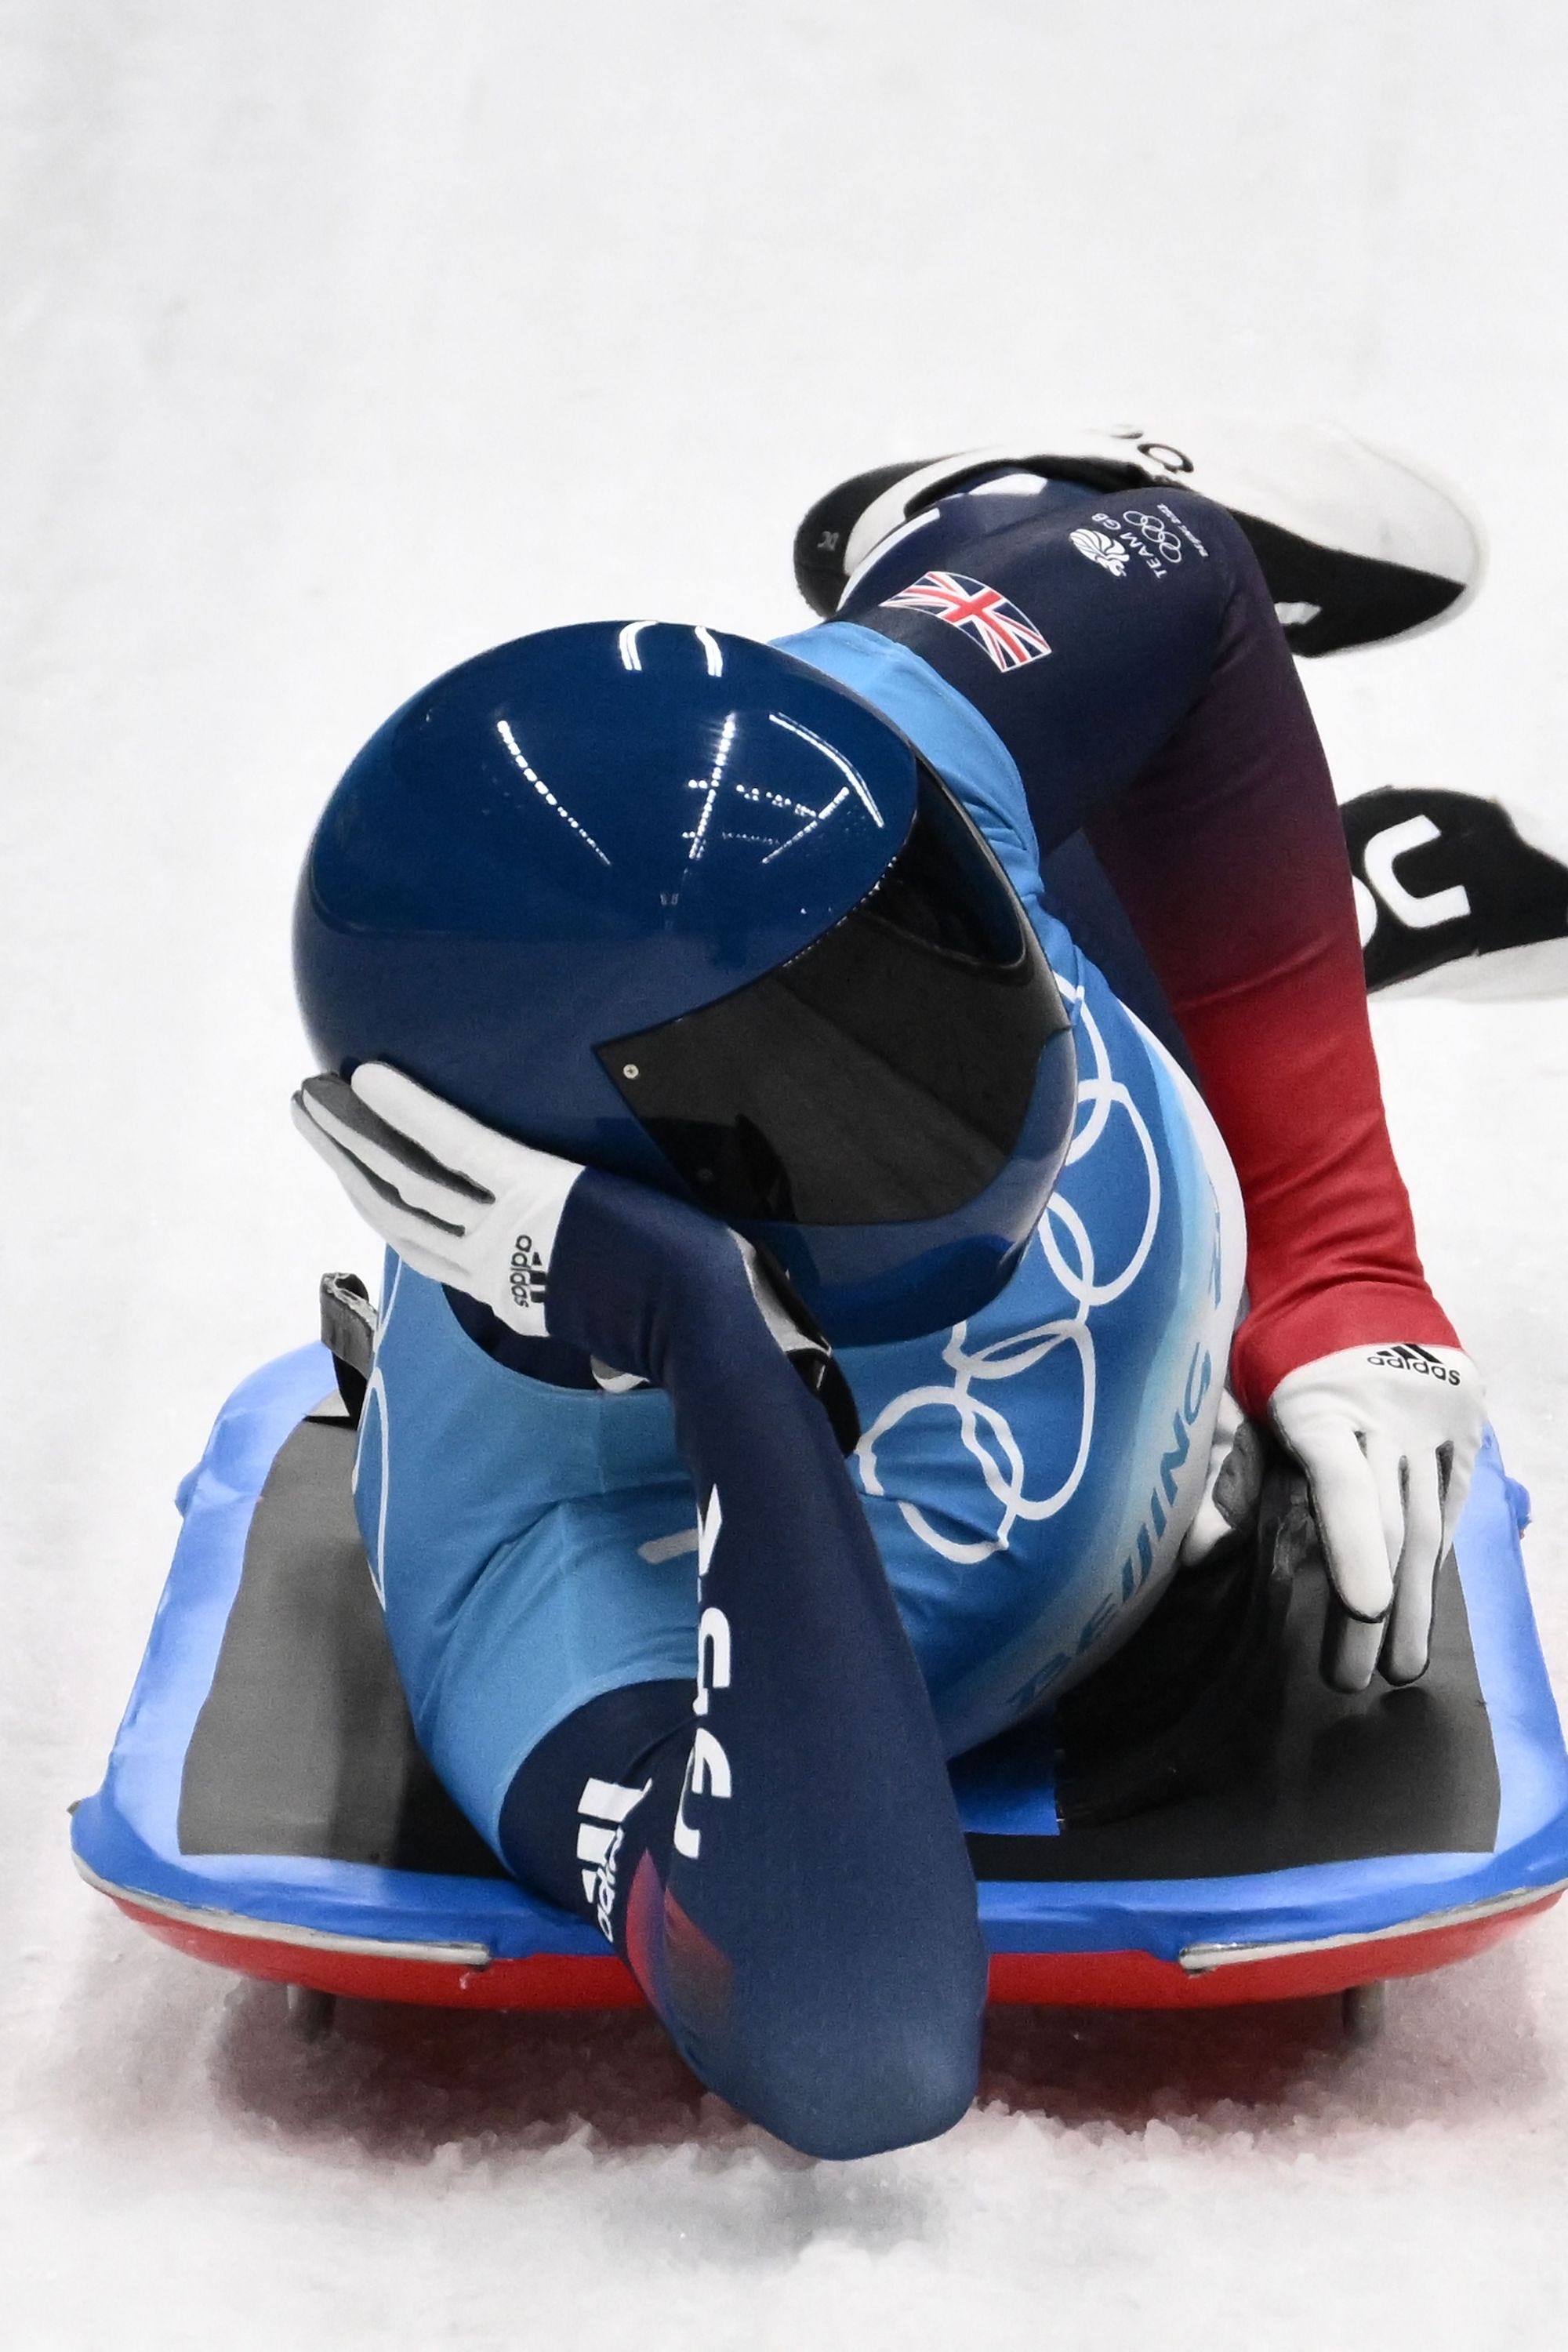 Ein Skeleton-Rennfahrer liegt bei den Olympischen Spielen in Peking in Pose auf der Seite.